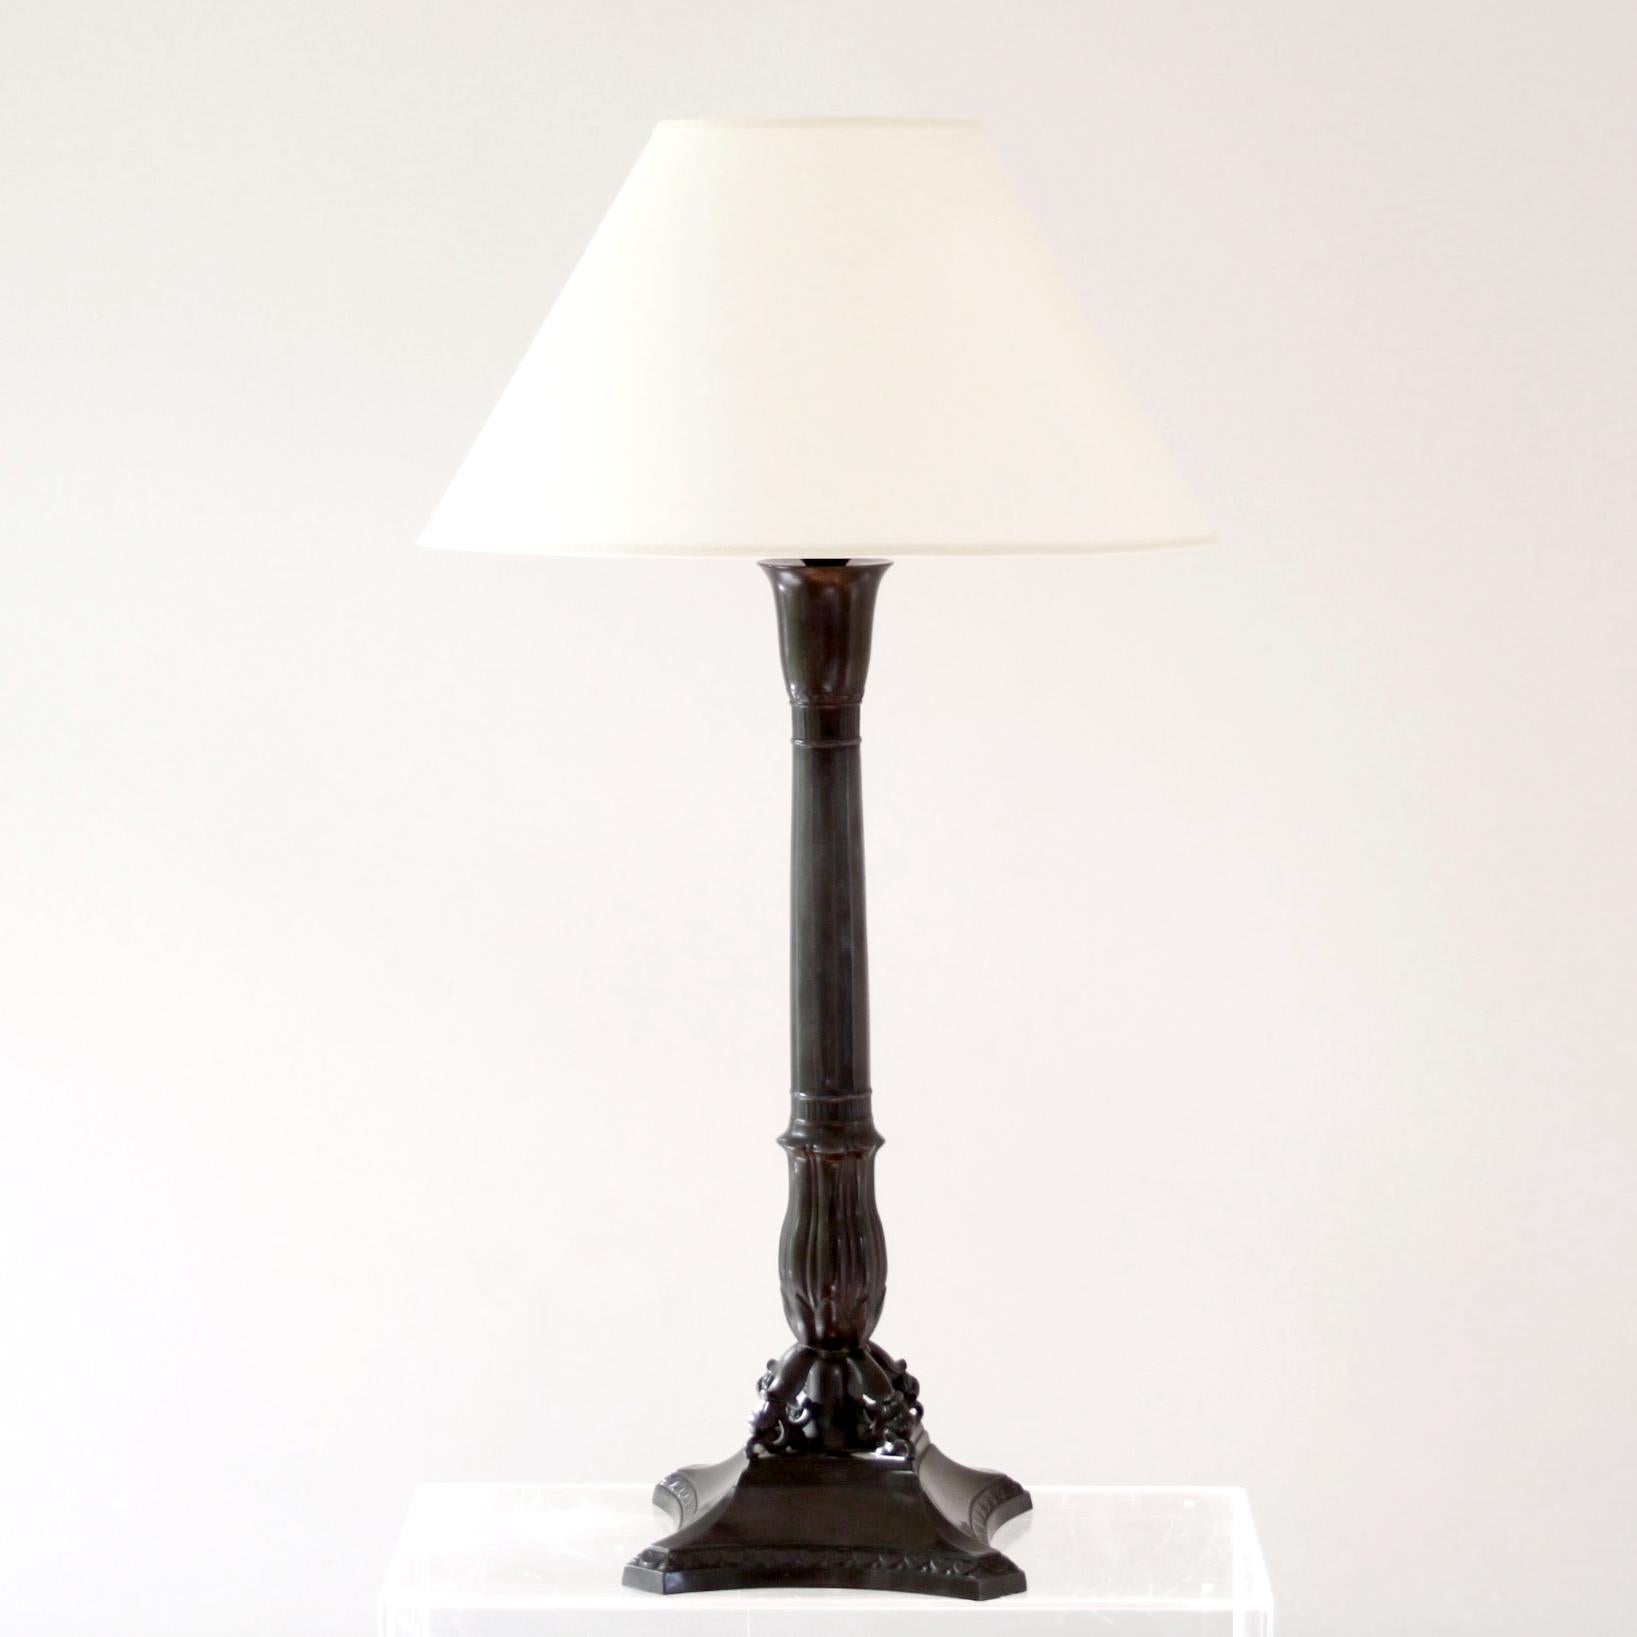 JUST ANDERSEN   -  DÄNEMARK 1920er Jahre
 
Große und seltene Tischlampe aus patiniertem Disko-Metall des dänischen Designers und Pioniers Just Andersen aus den 1920er Jahren. 

Die Lampe ist wunderschön mit Ornamenten verziert. 

Frühes Design,